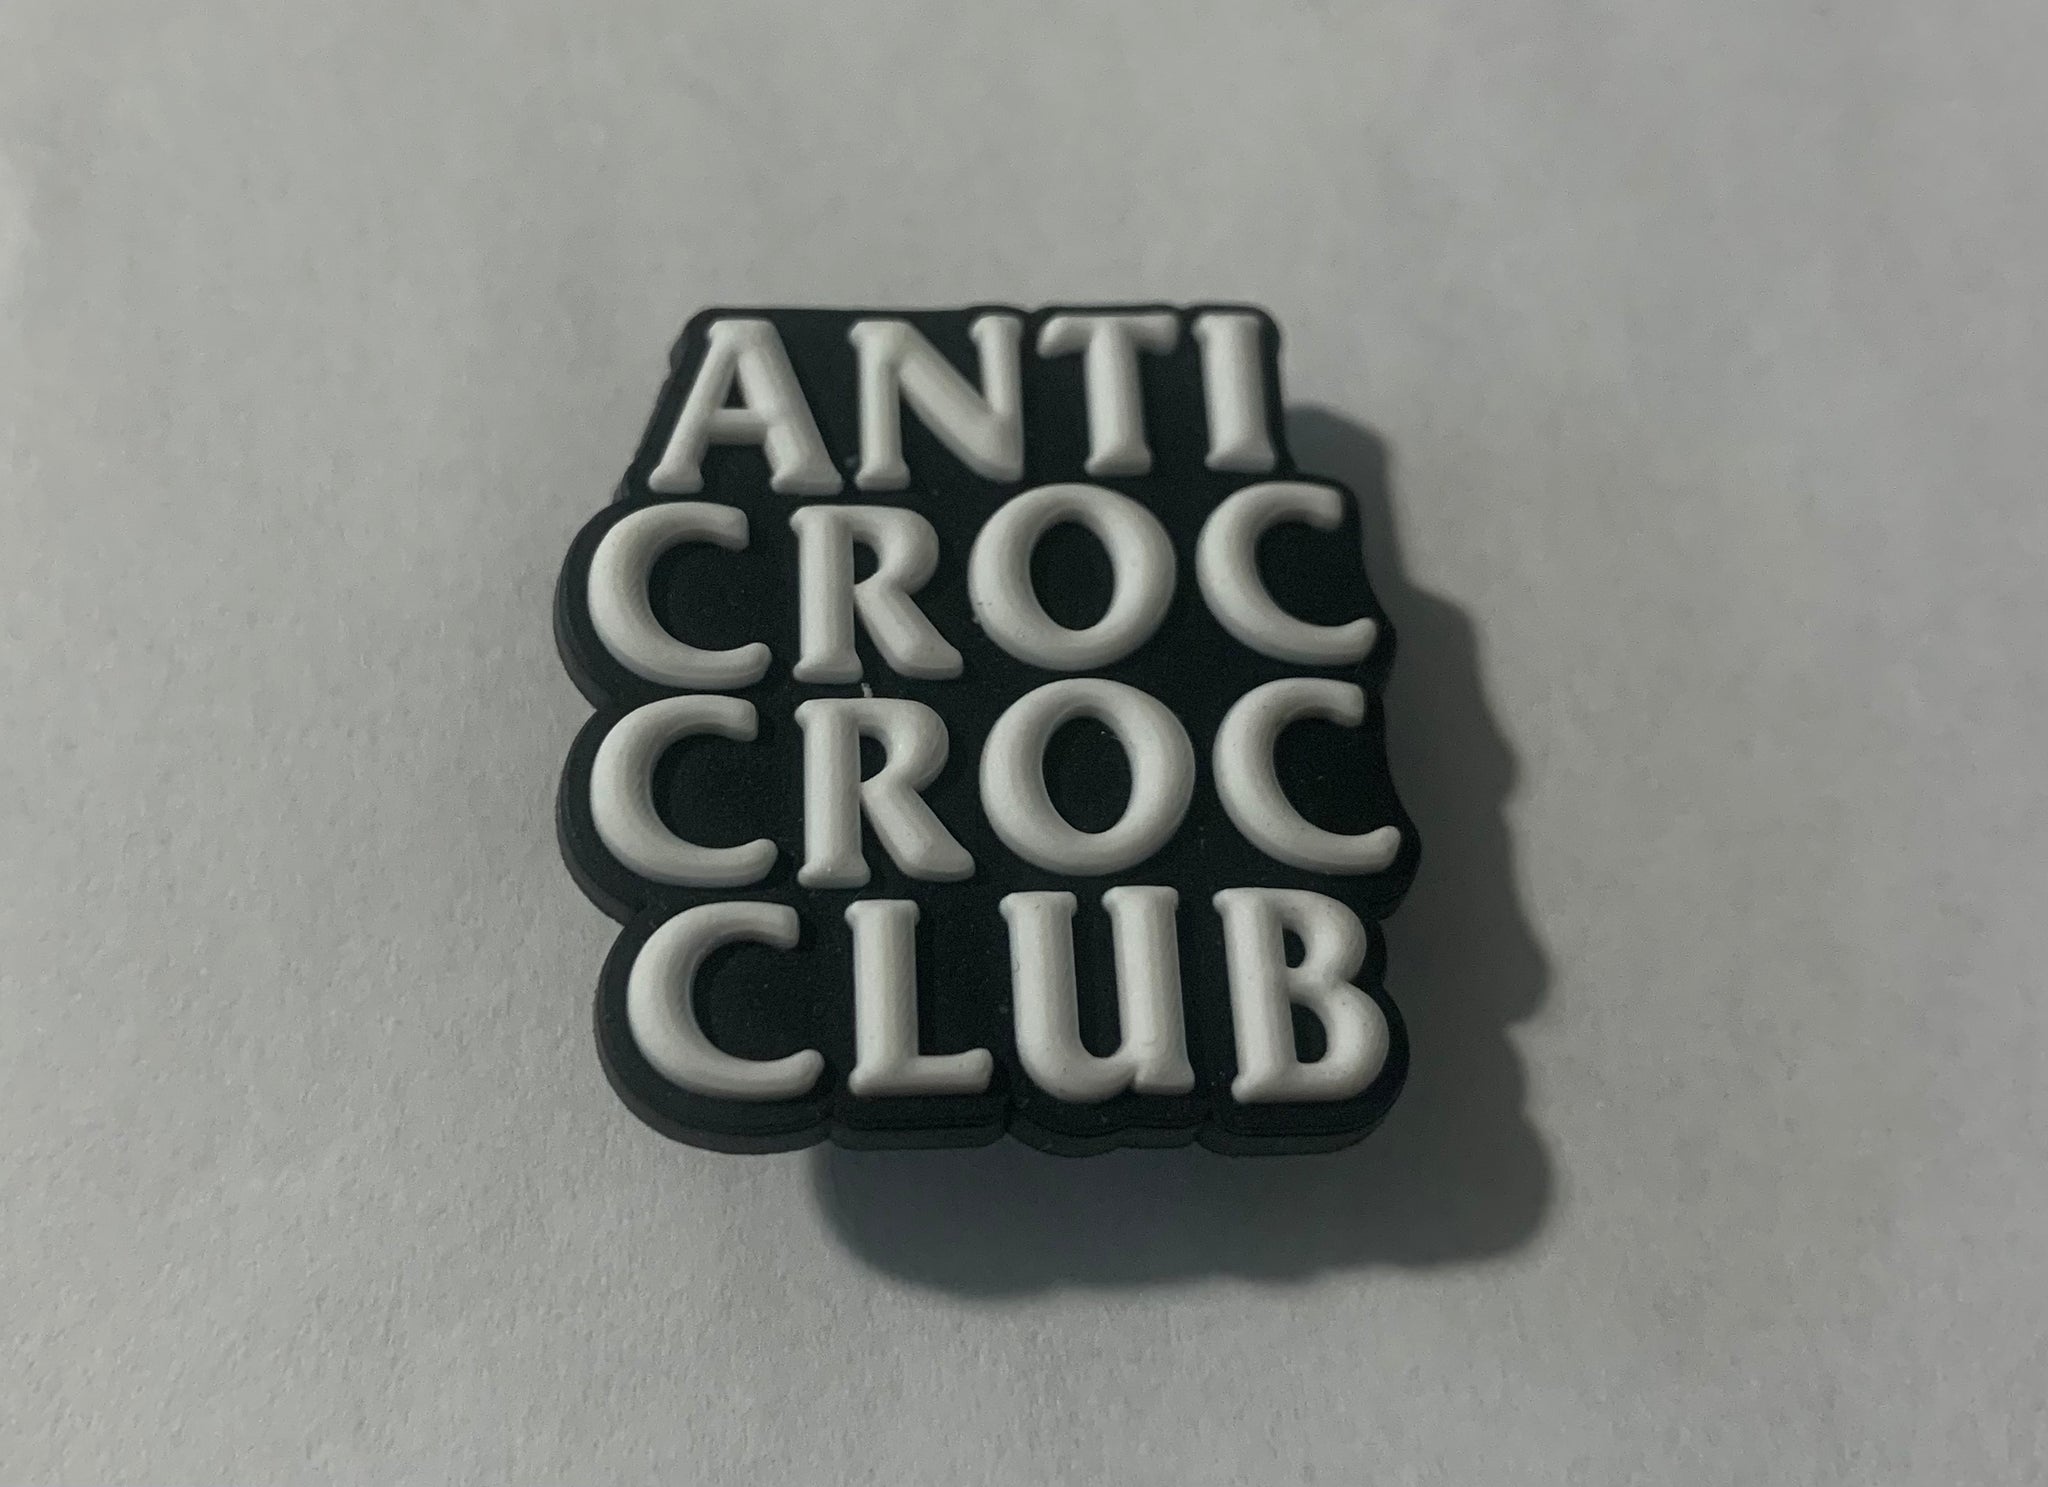 Anti-Croc Club croc charm